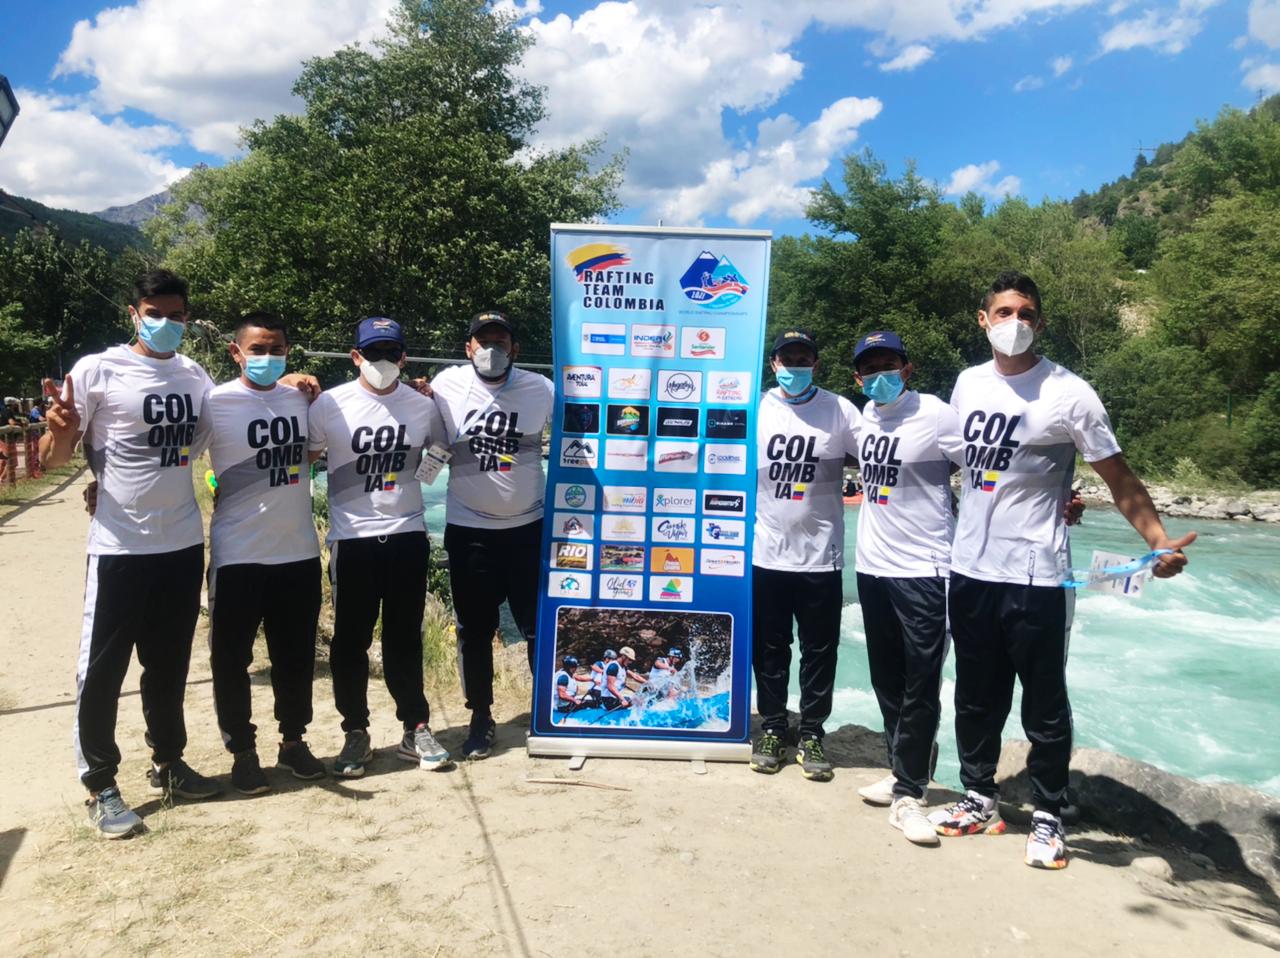 Equipo Rafting Team San Gil, compitiendo en el mundial de rafting de Francia 2021